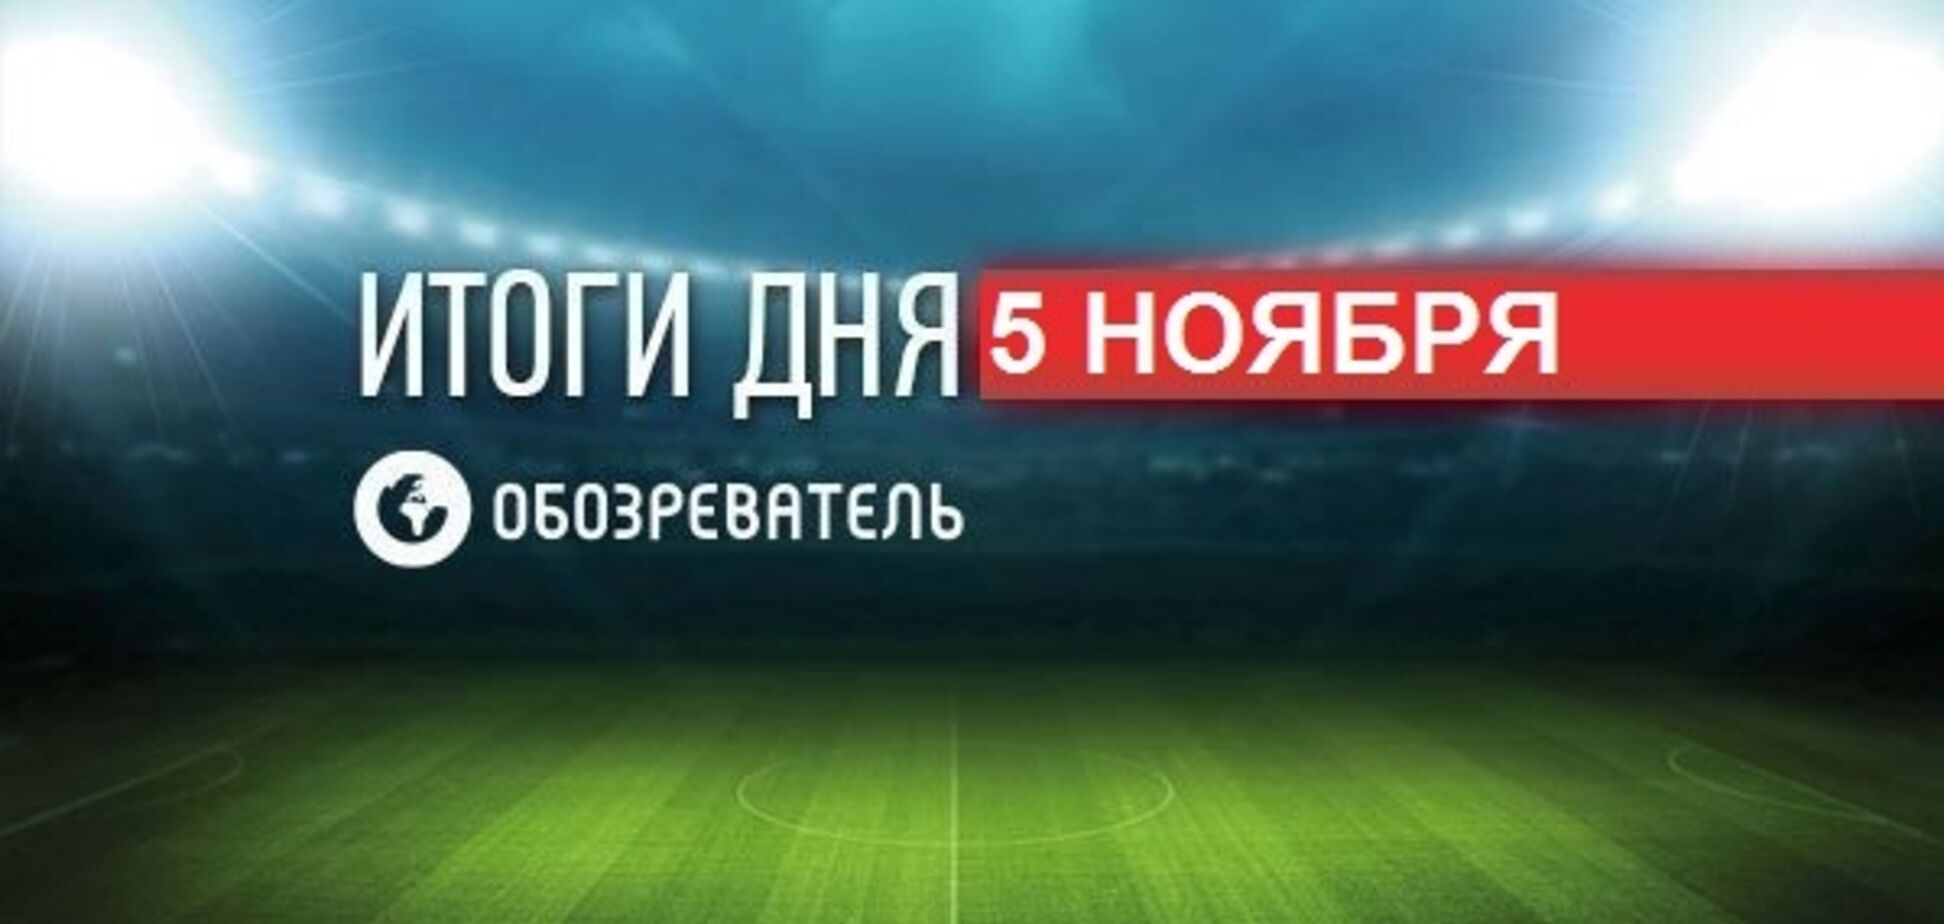 'Зенит' потерпел фиаско в Лиге чемпионов: спортивные итоги 5 ноября